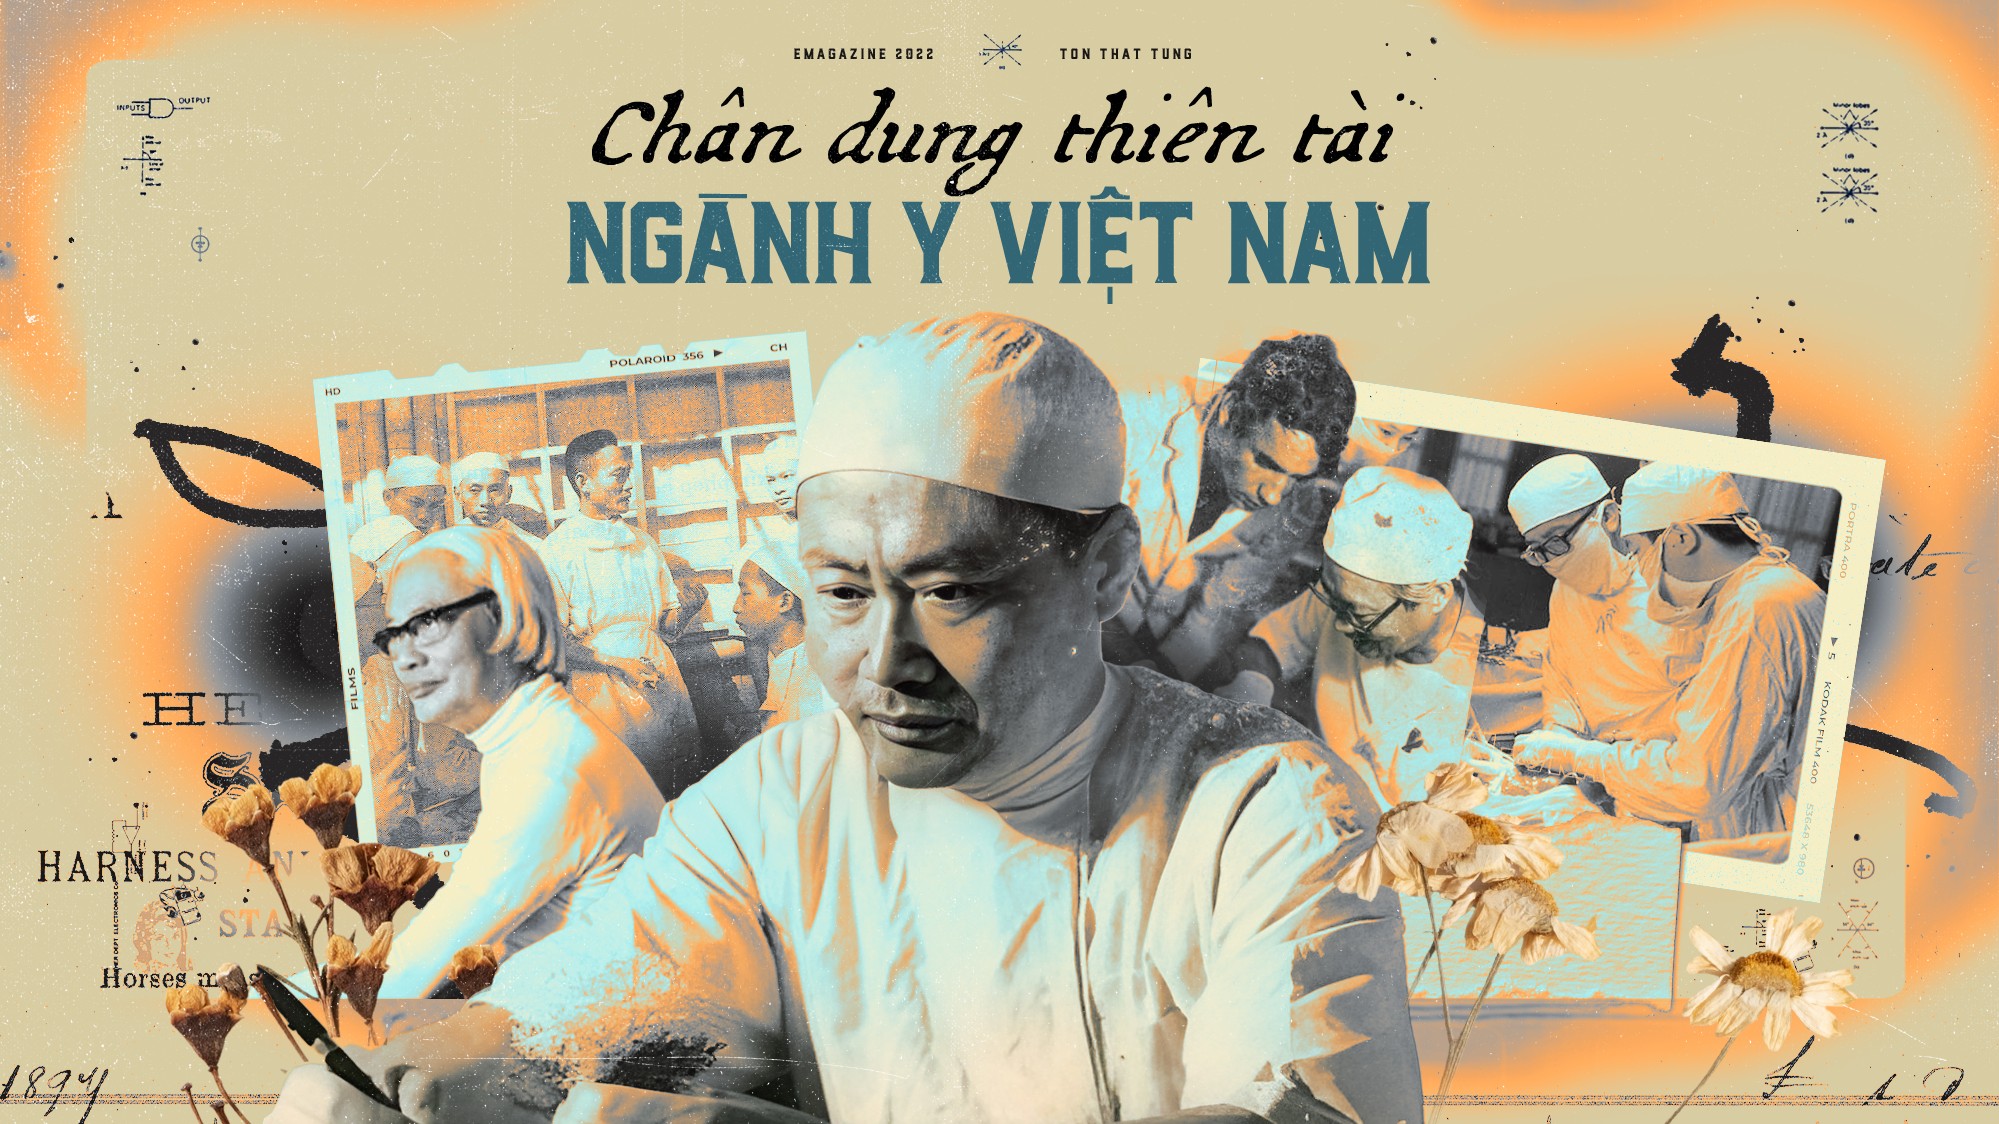 Chân dung thiên tài ngành y Việt Nam - GS Tôn Thất Tùng qua lời kể của học trò chân truyền